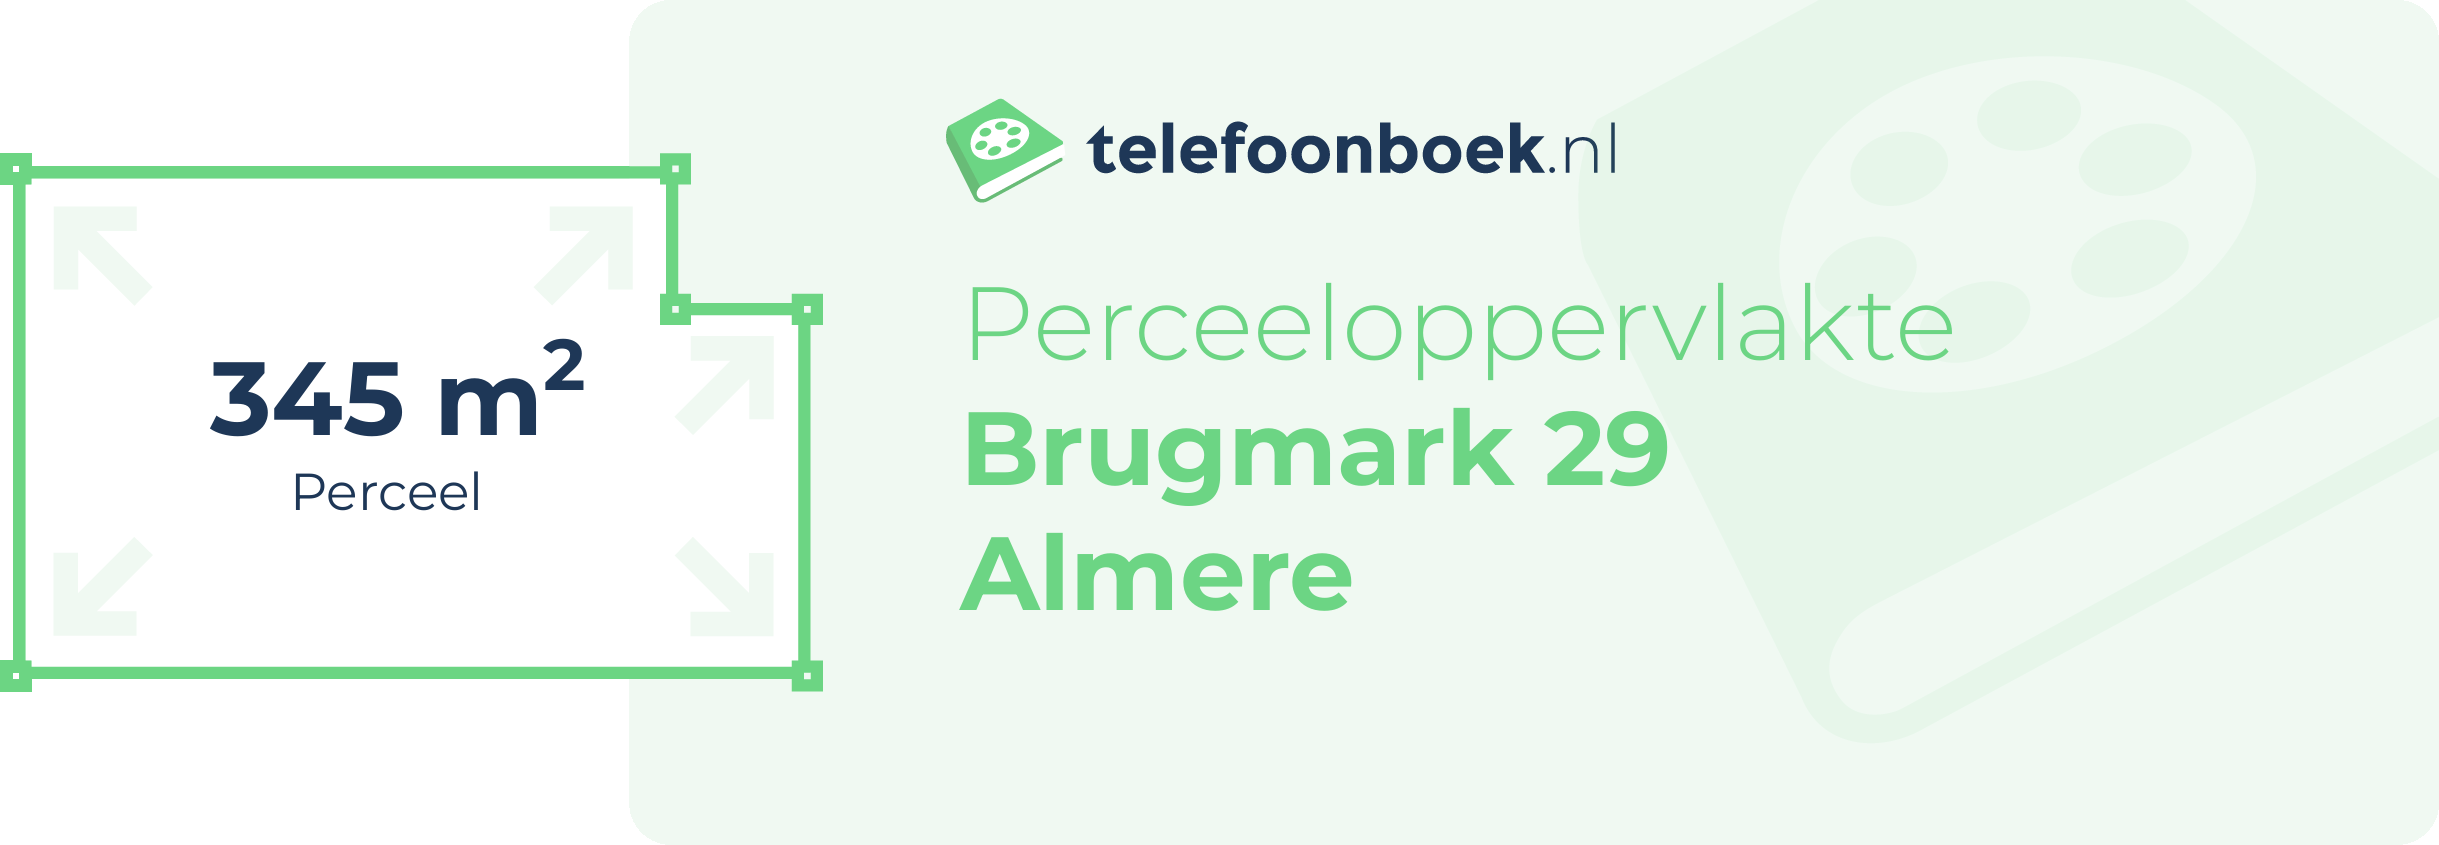 Perceeloppervlakte Brugmark 29 Almere